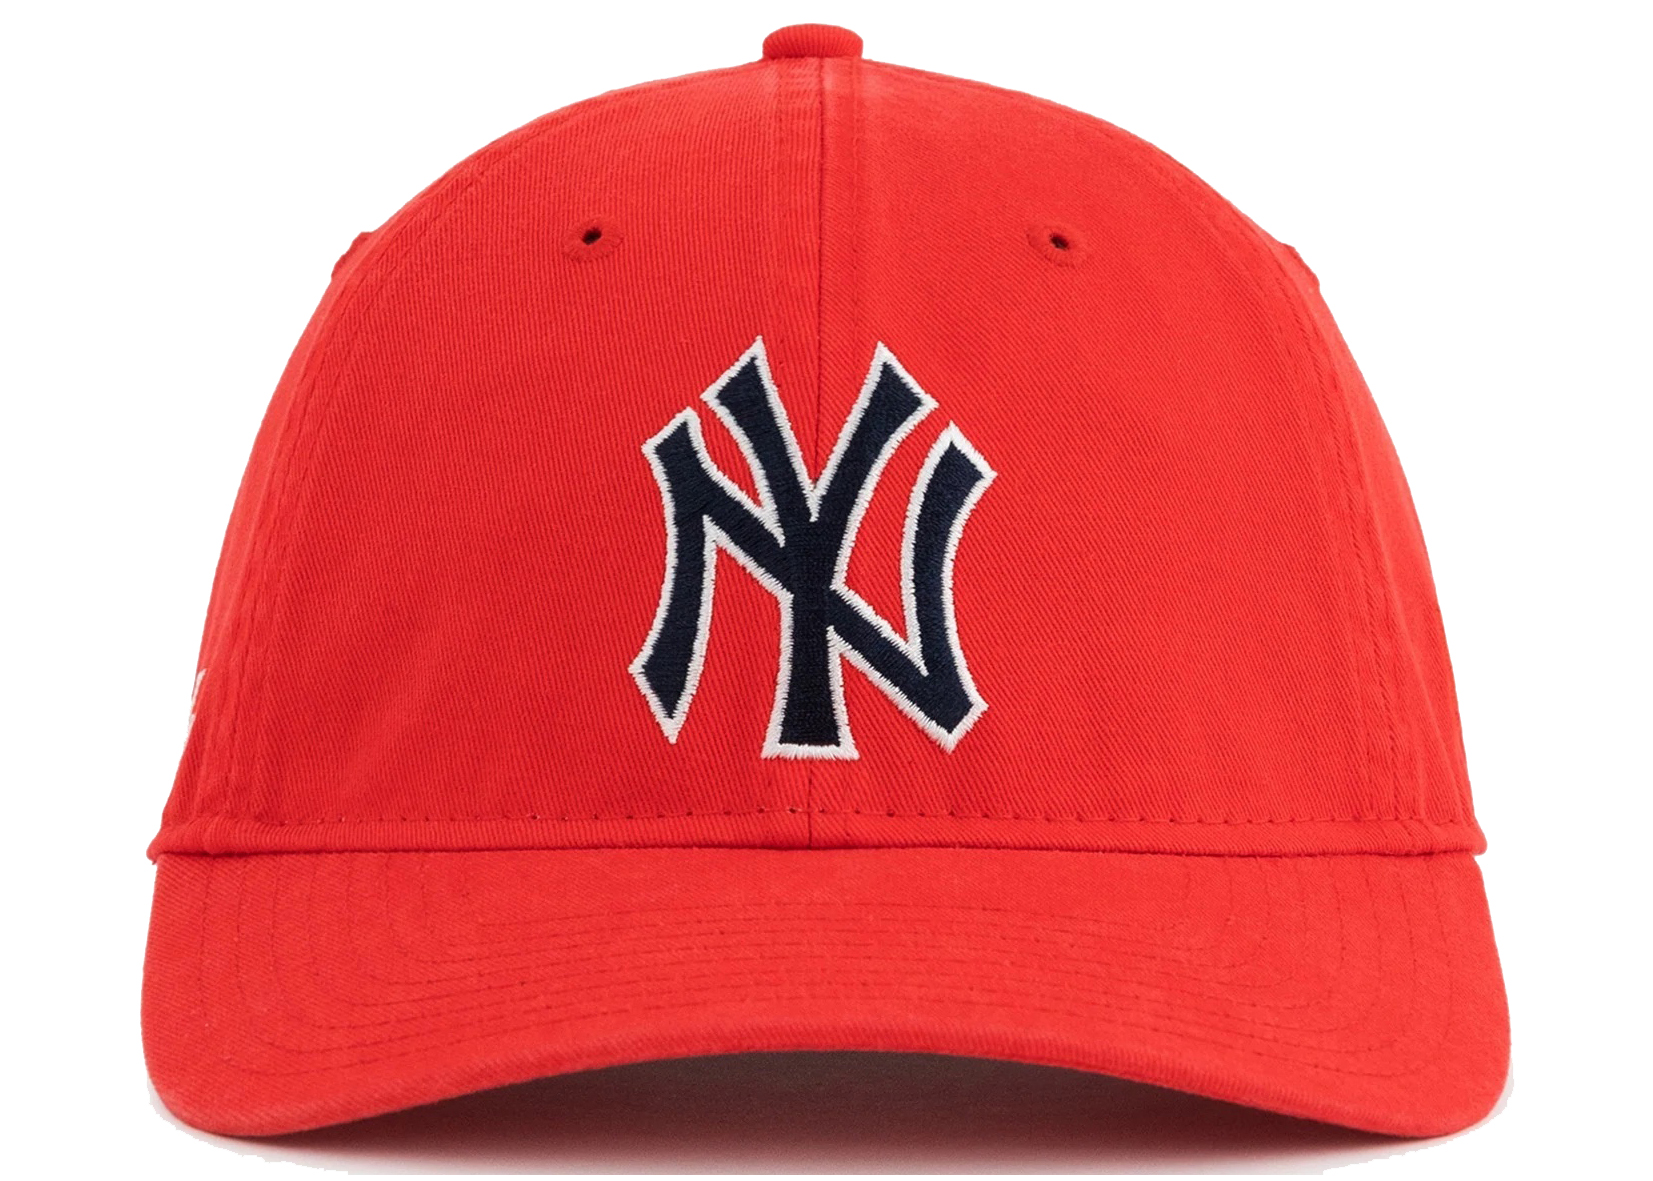 Aime Leon dore New Era Yankees Hat